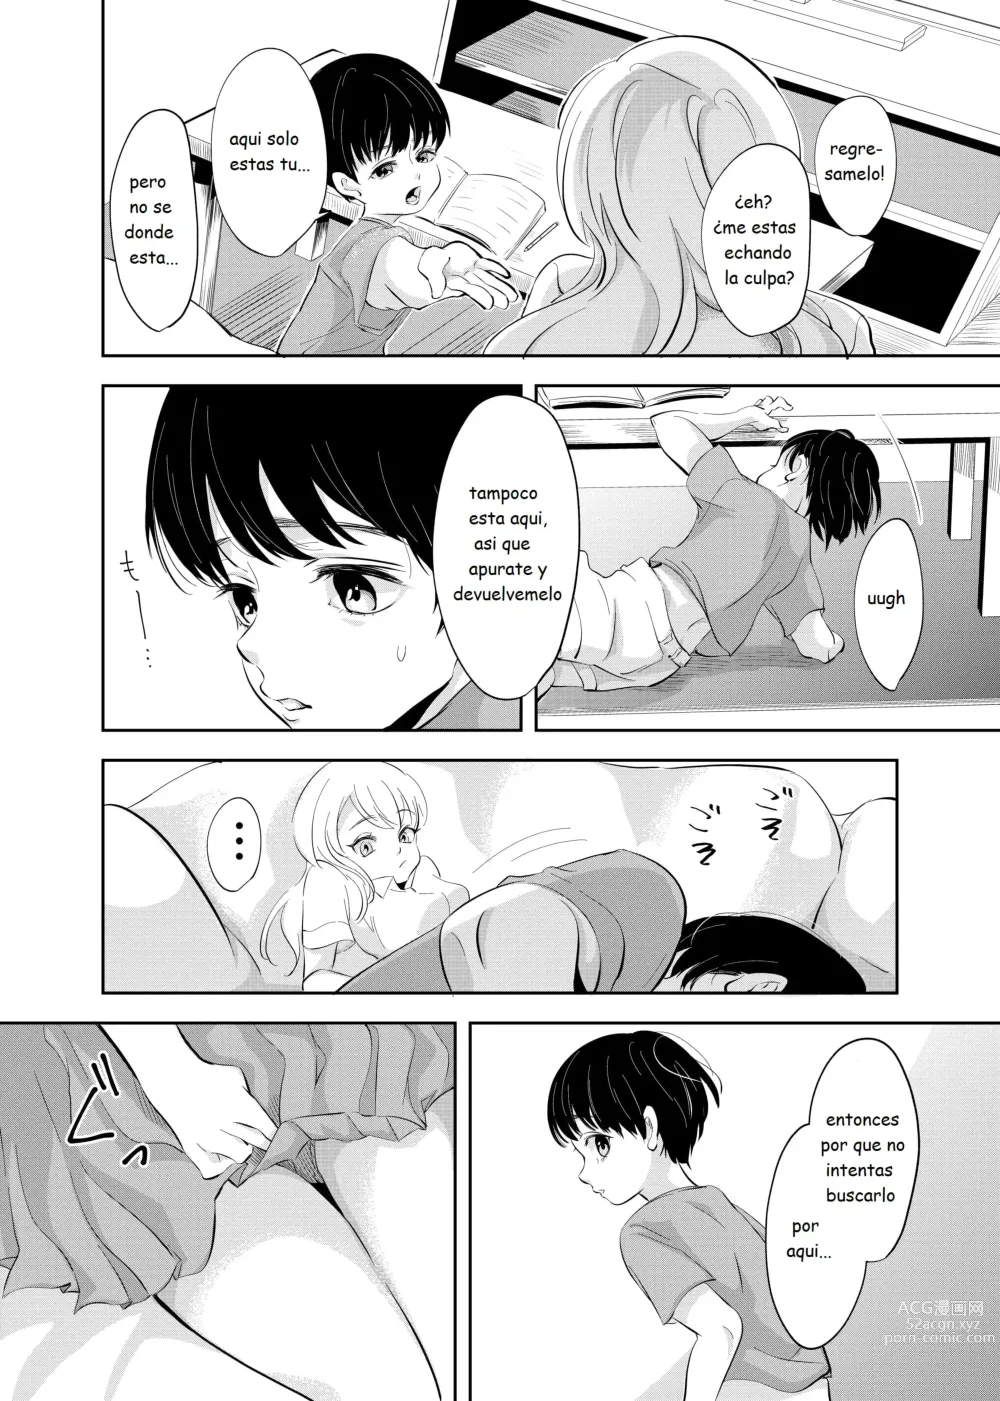 Page 9 of doujinshi Despues de la escuela